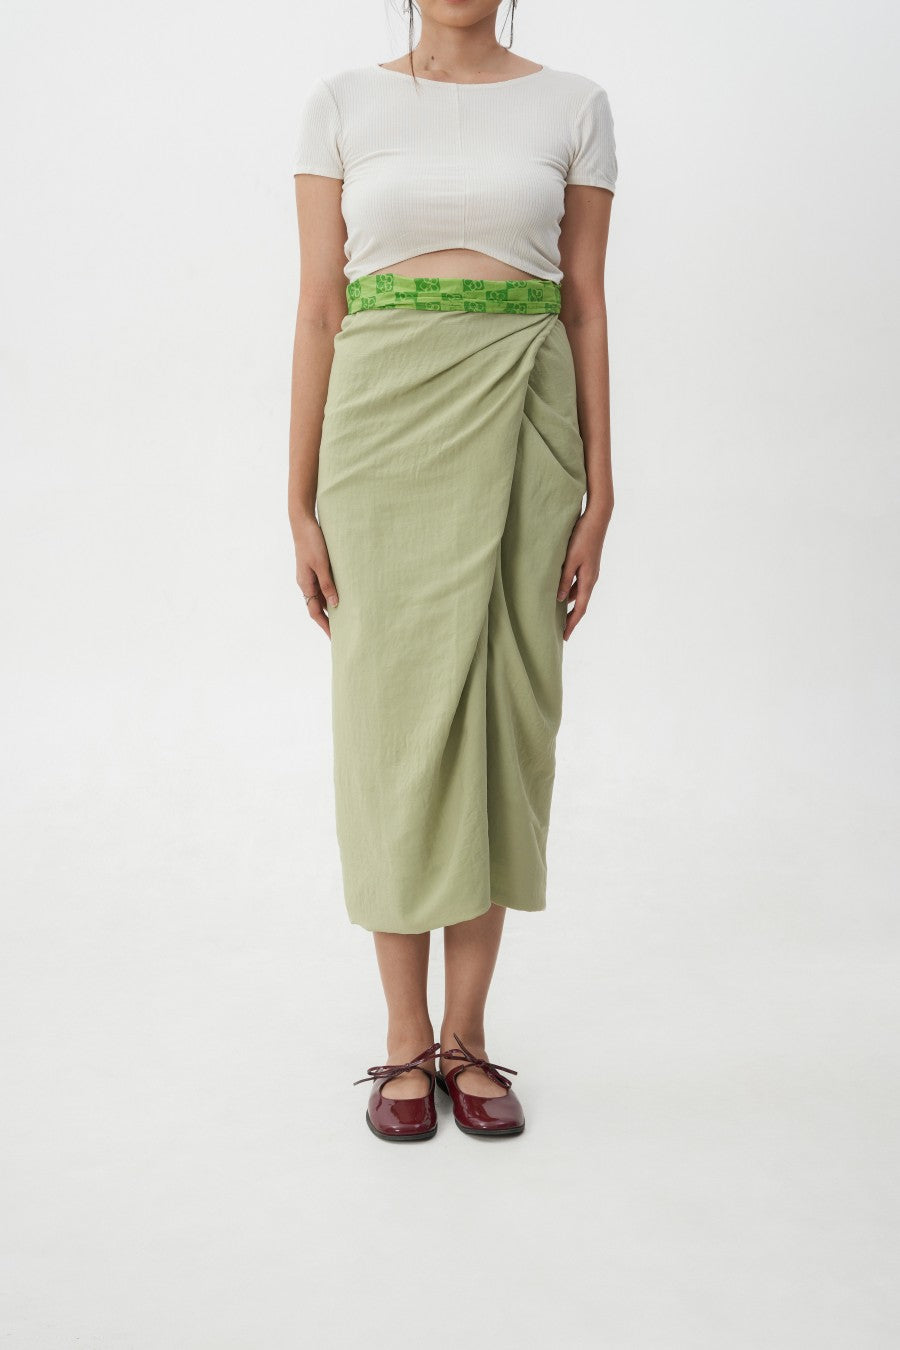 Kuka Wrap Skirt 2 in 1 Green - Kurantaka